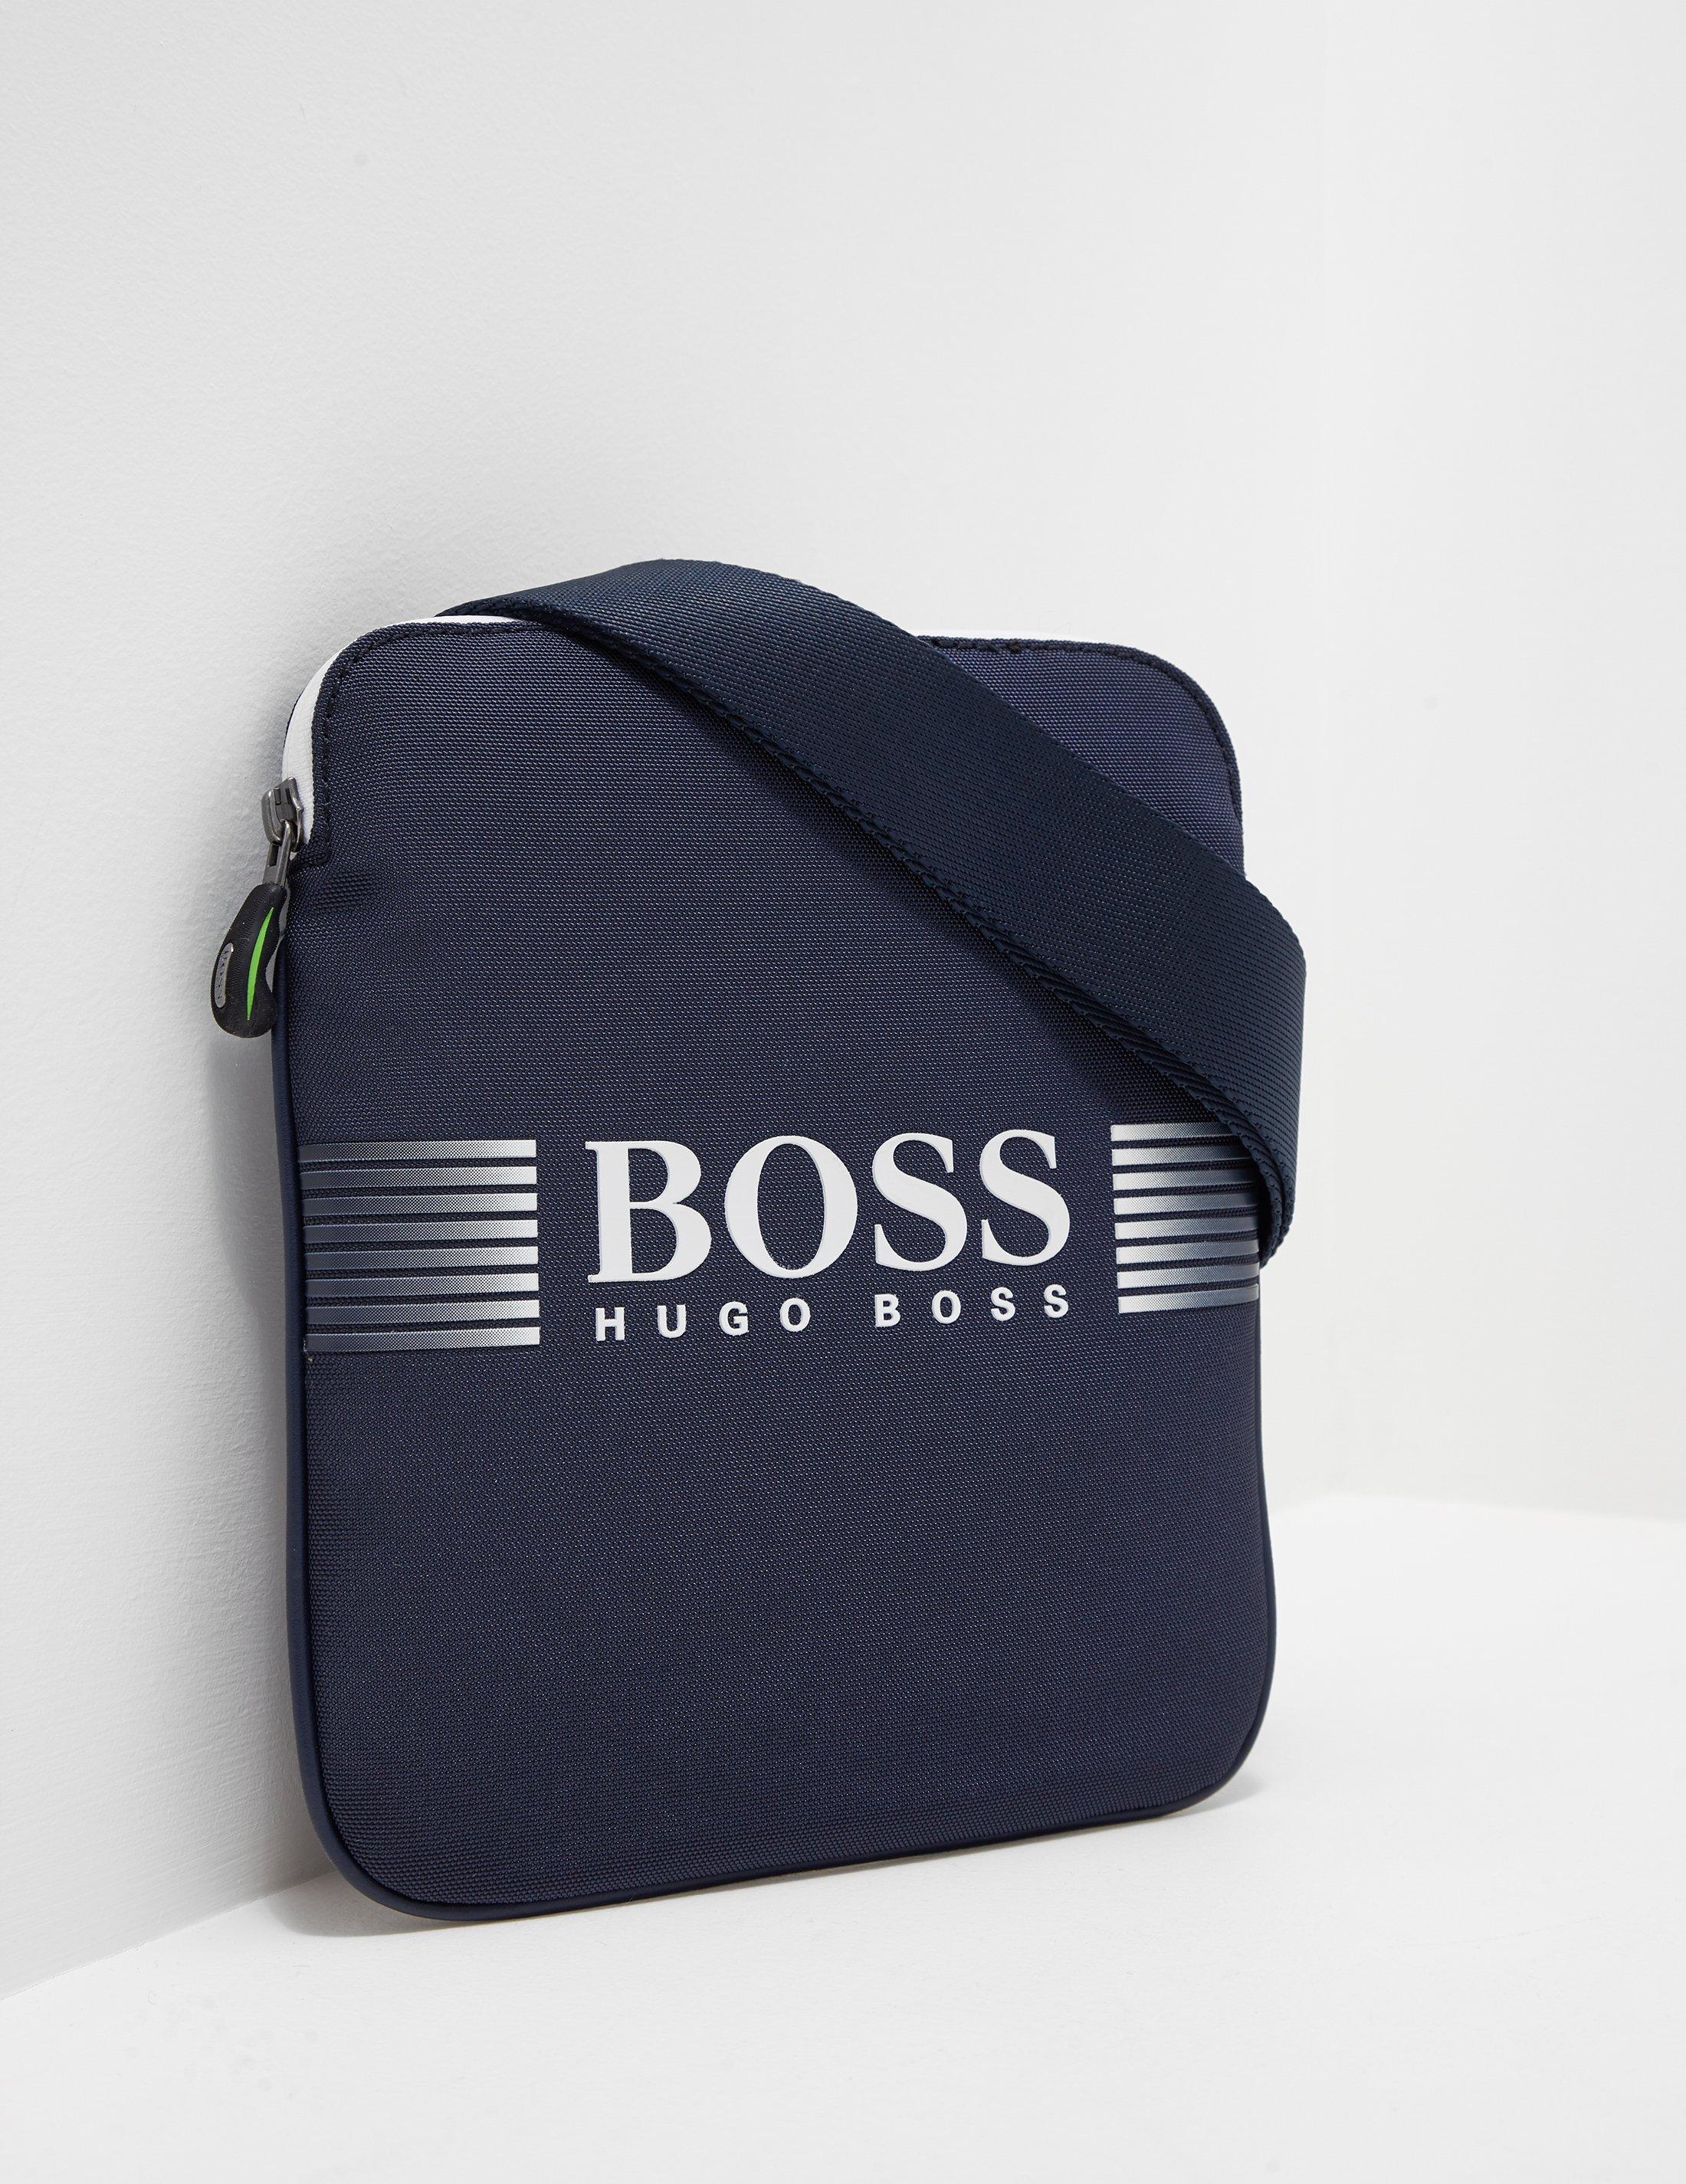 Hugo Boss Wet Bag Top Sellers, SAVE 60%.